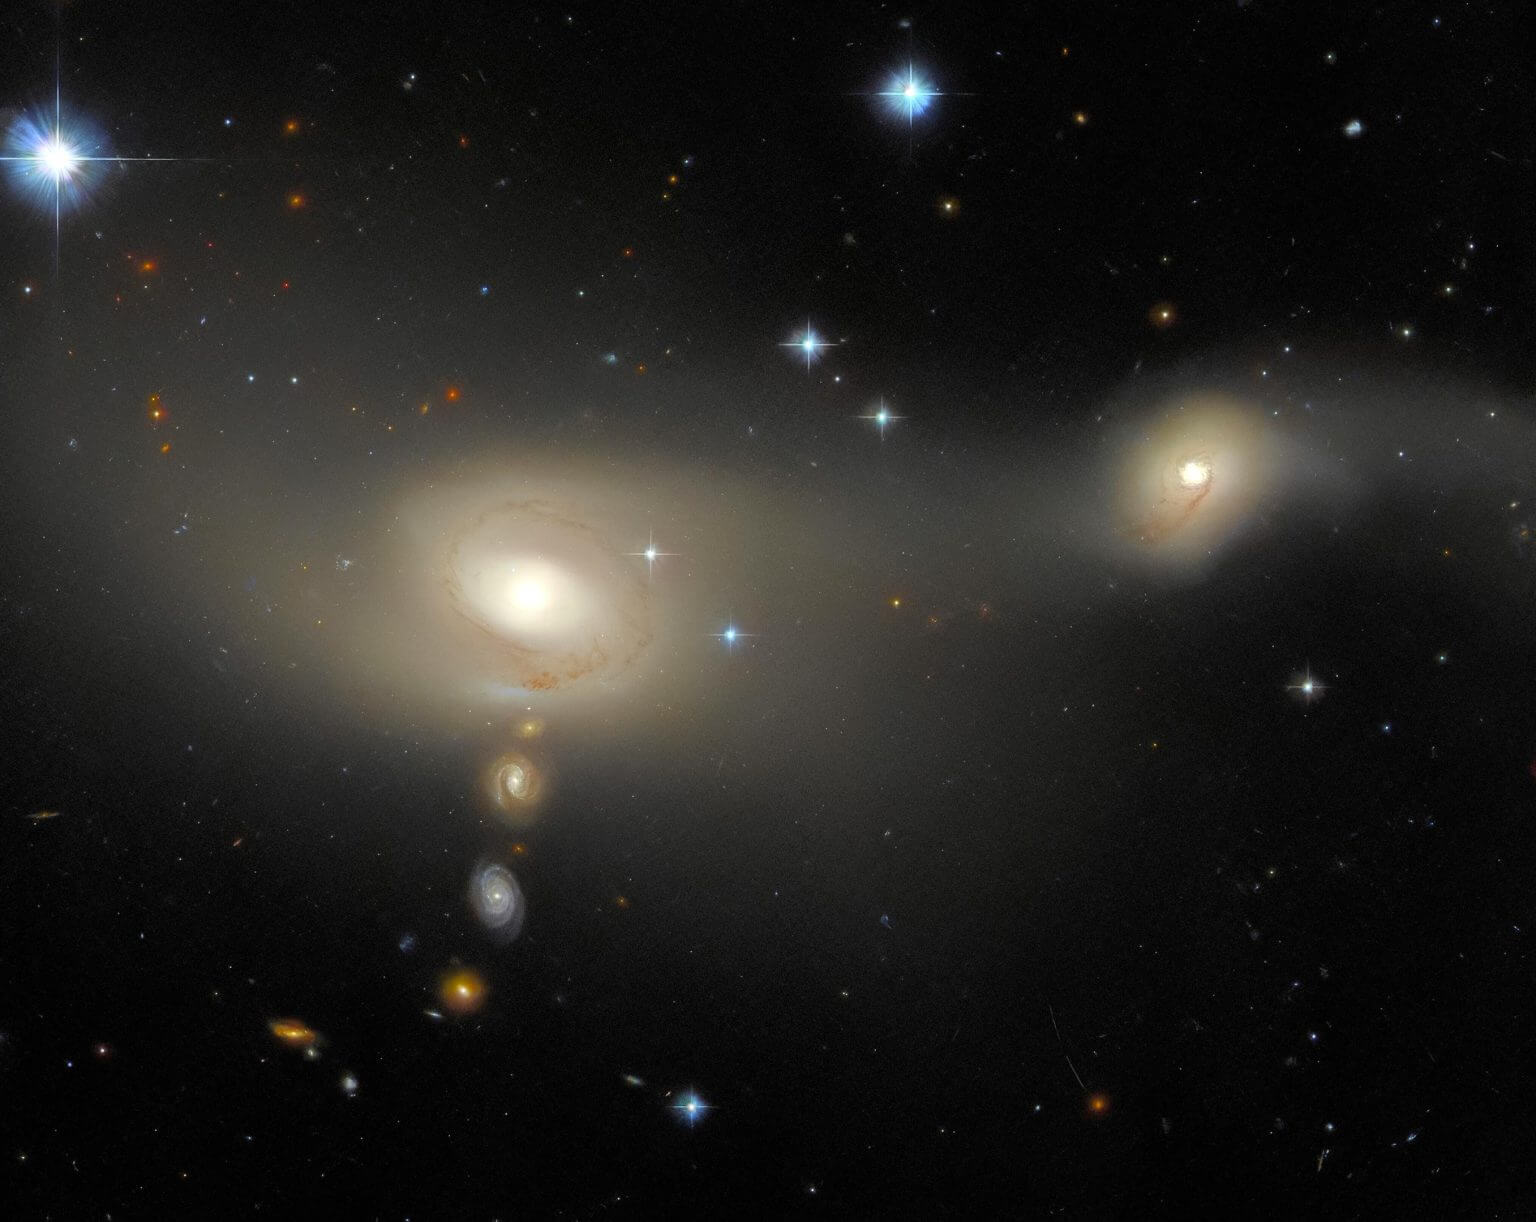 התמונה הזאת שצילם טלסקופ החלל האבל מראה את ארם-מדור 2105-332, מערכת גלקסיות ייחודית בקבוצת מיקרוסקופ. היא ידועה בגלקסיות קווי הפליטה שלה, המצביעות על יצירת כוכבים נמרצת. היא  מופיעה בתמונת השבוע של האבל, ושהשמות ניתנו לגלקסיות באמצעות קואורדינטות אסטרונומיות. קרדיט: ESA/Hubble & NASA, J. Dalcanton, Acknowledgment: L. Shatz